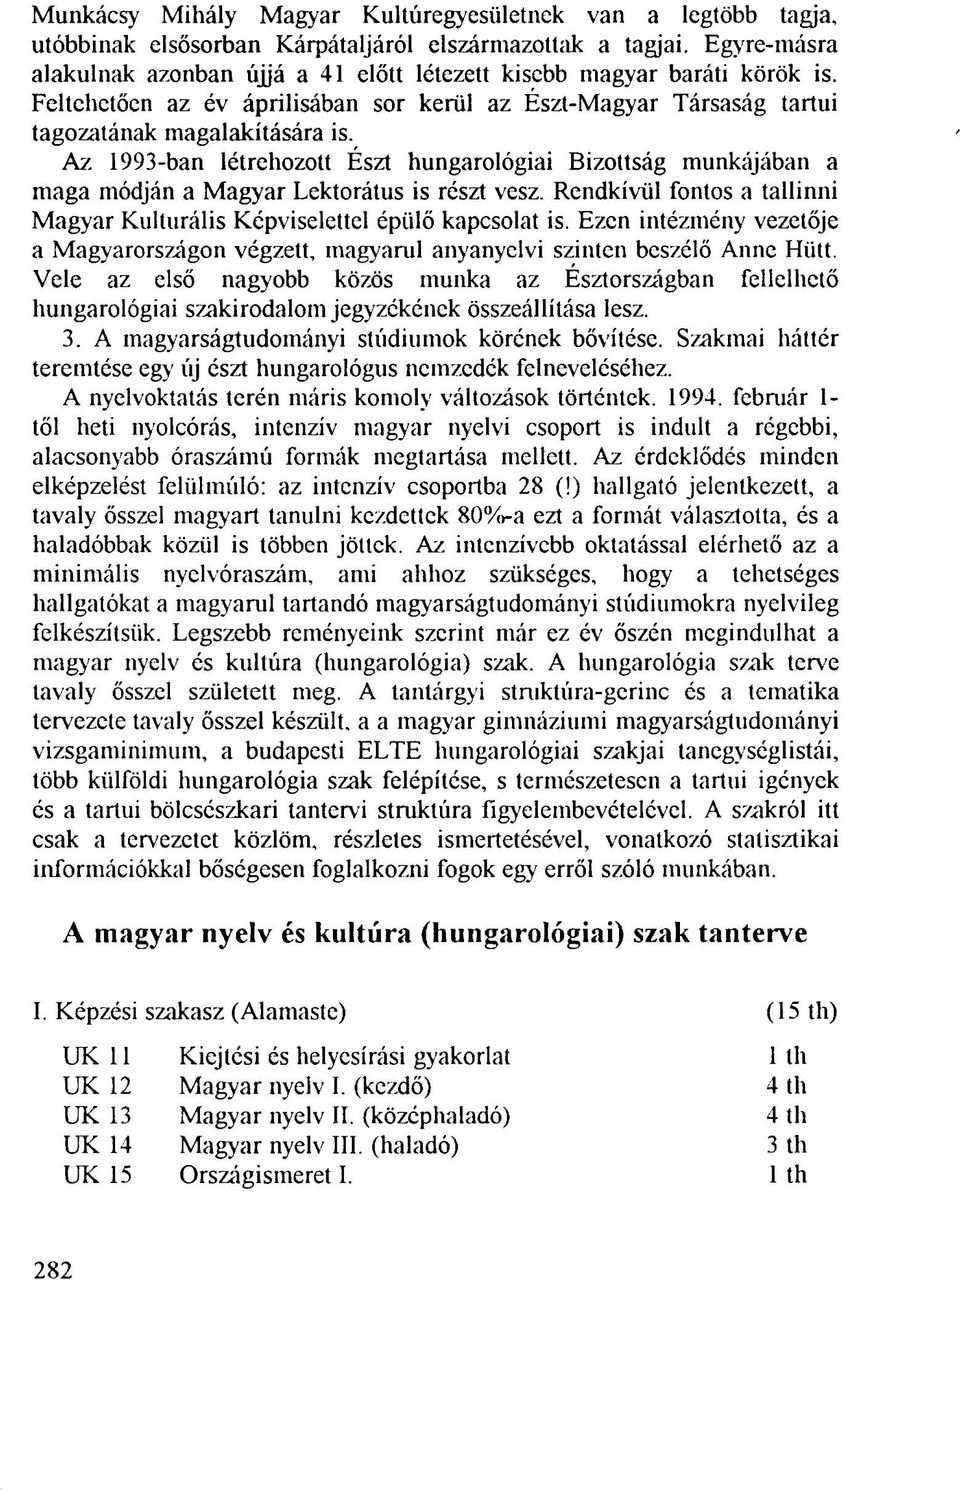 Az 1993-ban létrehozott Észt hungarológiai Bizottság munkájában a maga módján a Magyar Lektorátus is részt vesz. Rendkívül fontos a tallirmi Magyar Kulturális Képviselettel épülő kapcsolat is.